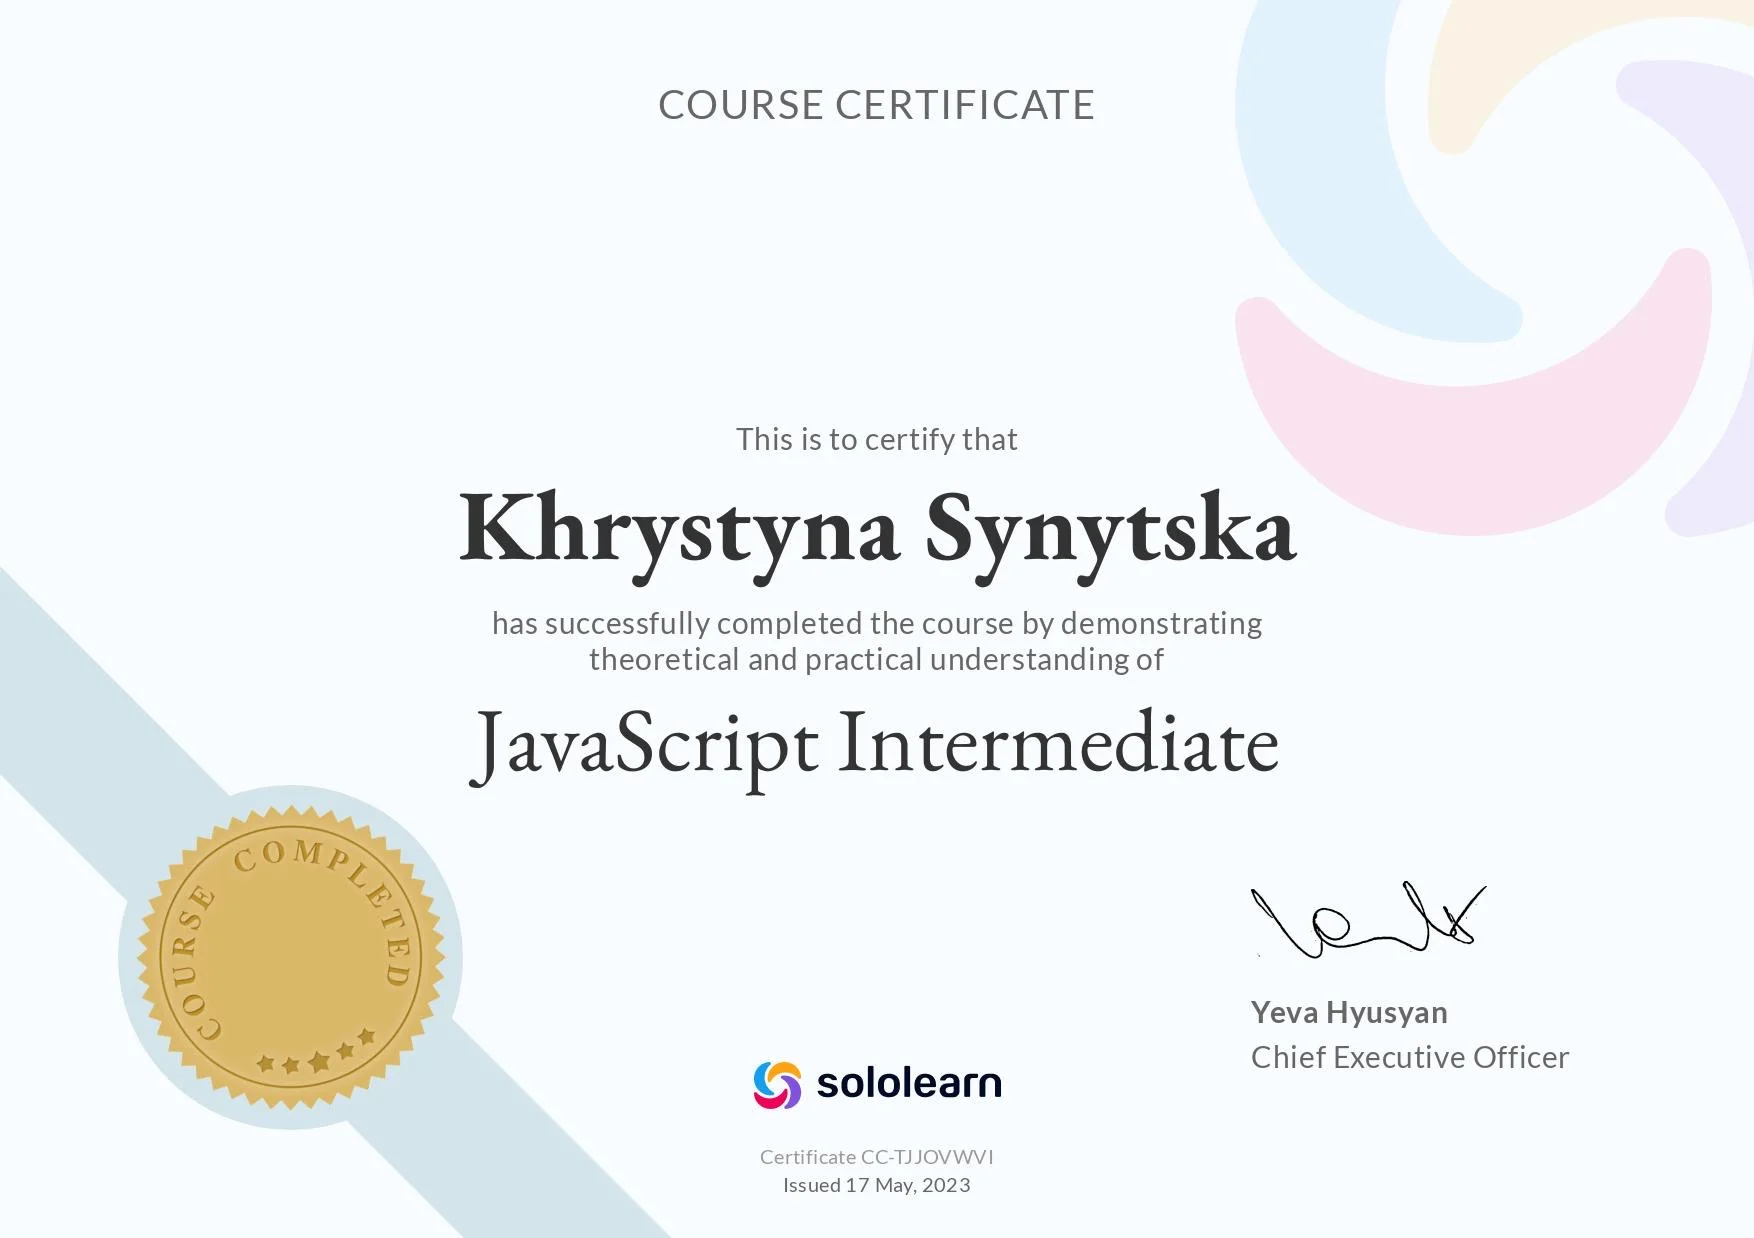 sololearn certificate